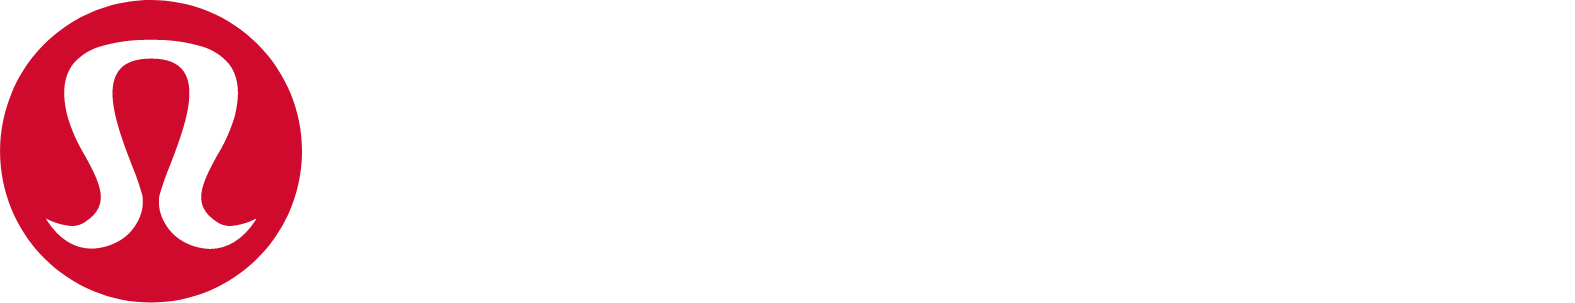 lululemon athletica logo large for dark backgrounds (transparent PNG)